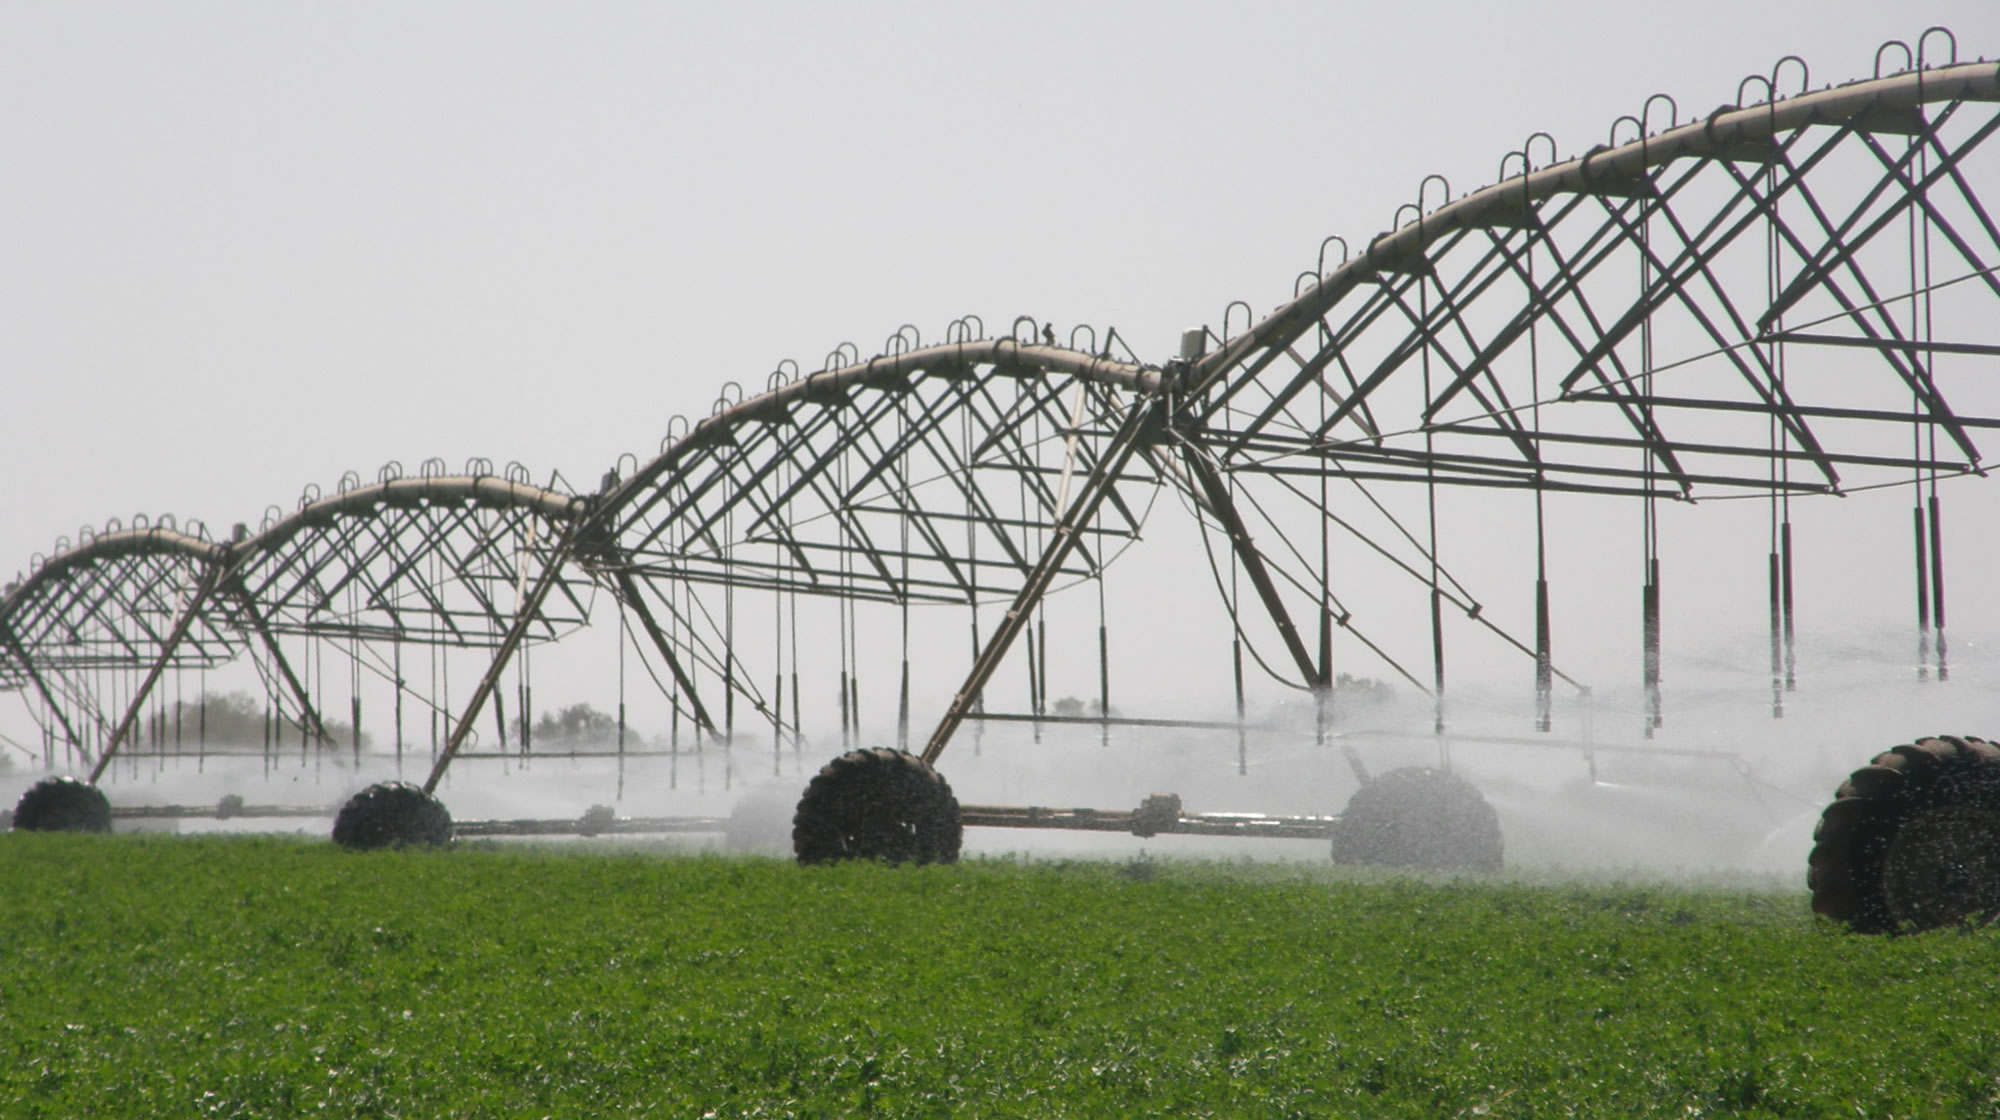 Nom : irrigation-equipment-pivot.jpg
Affichages : 94
Taille : 304,1 Ko